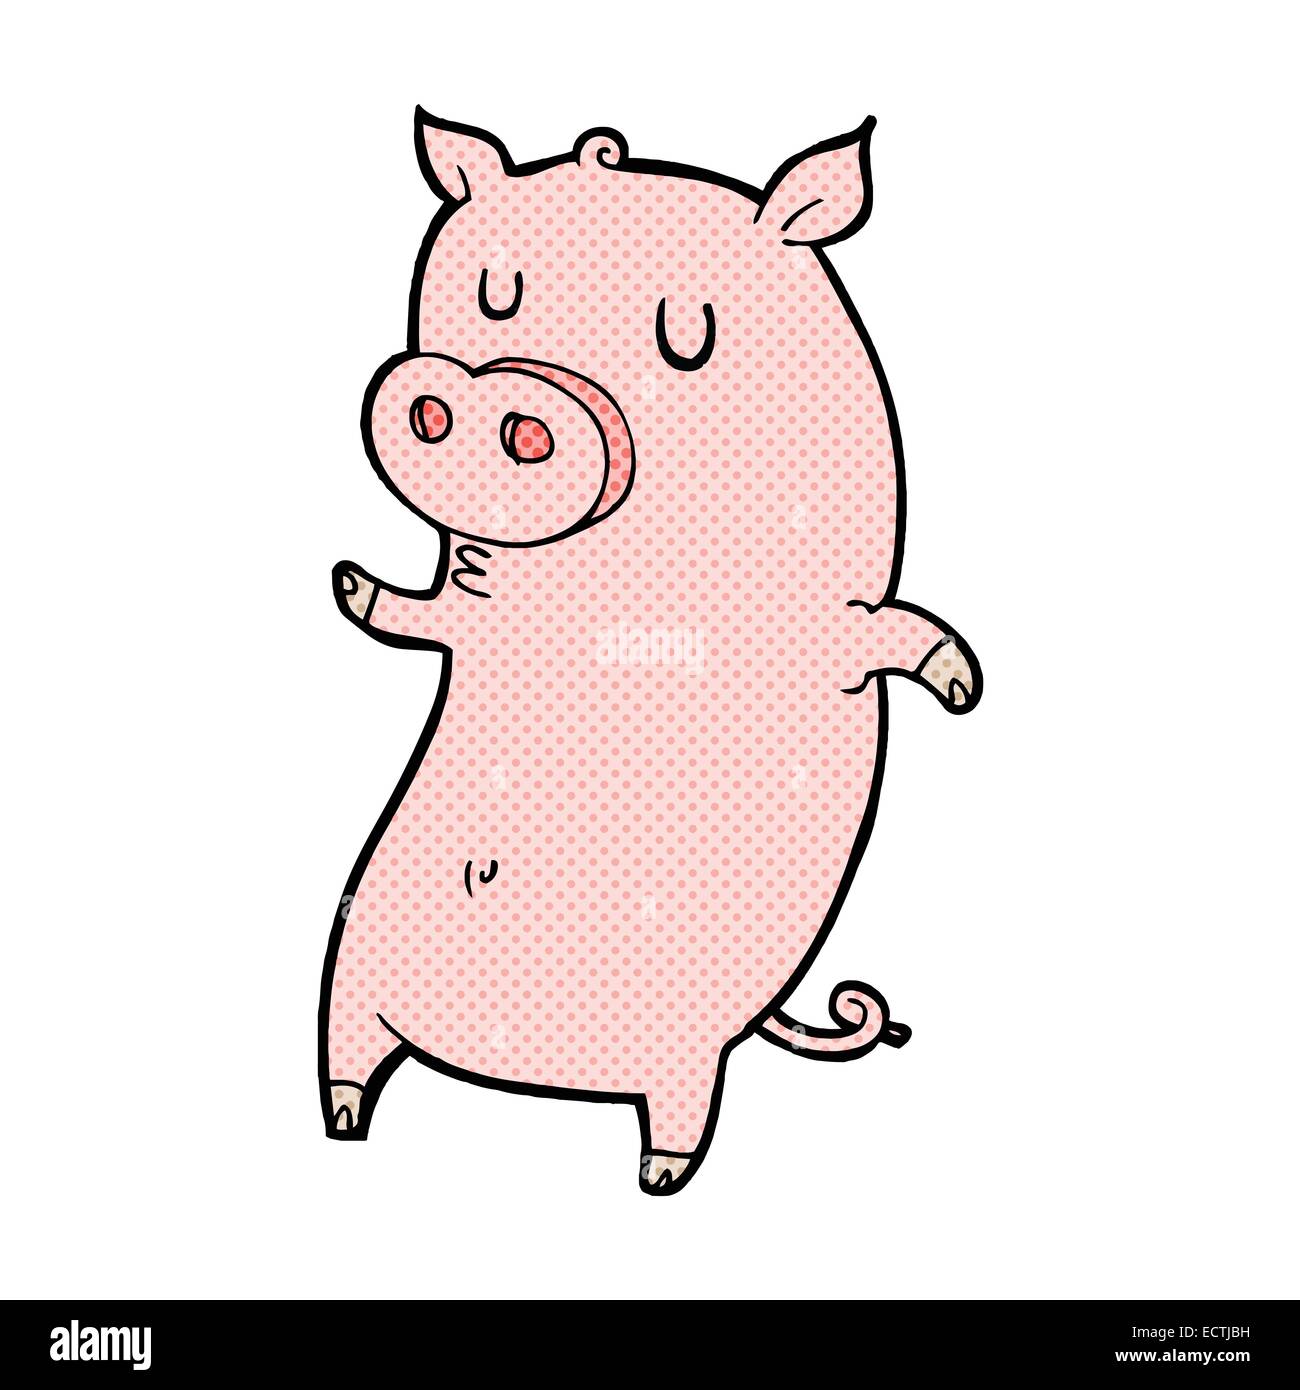 funny pig comic